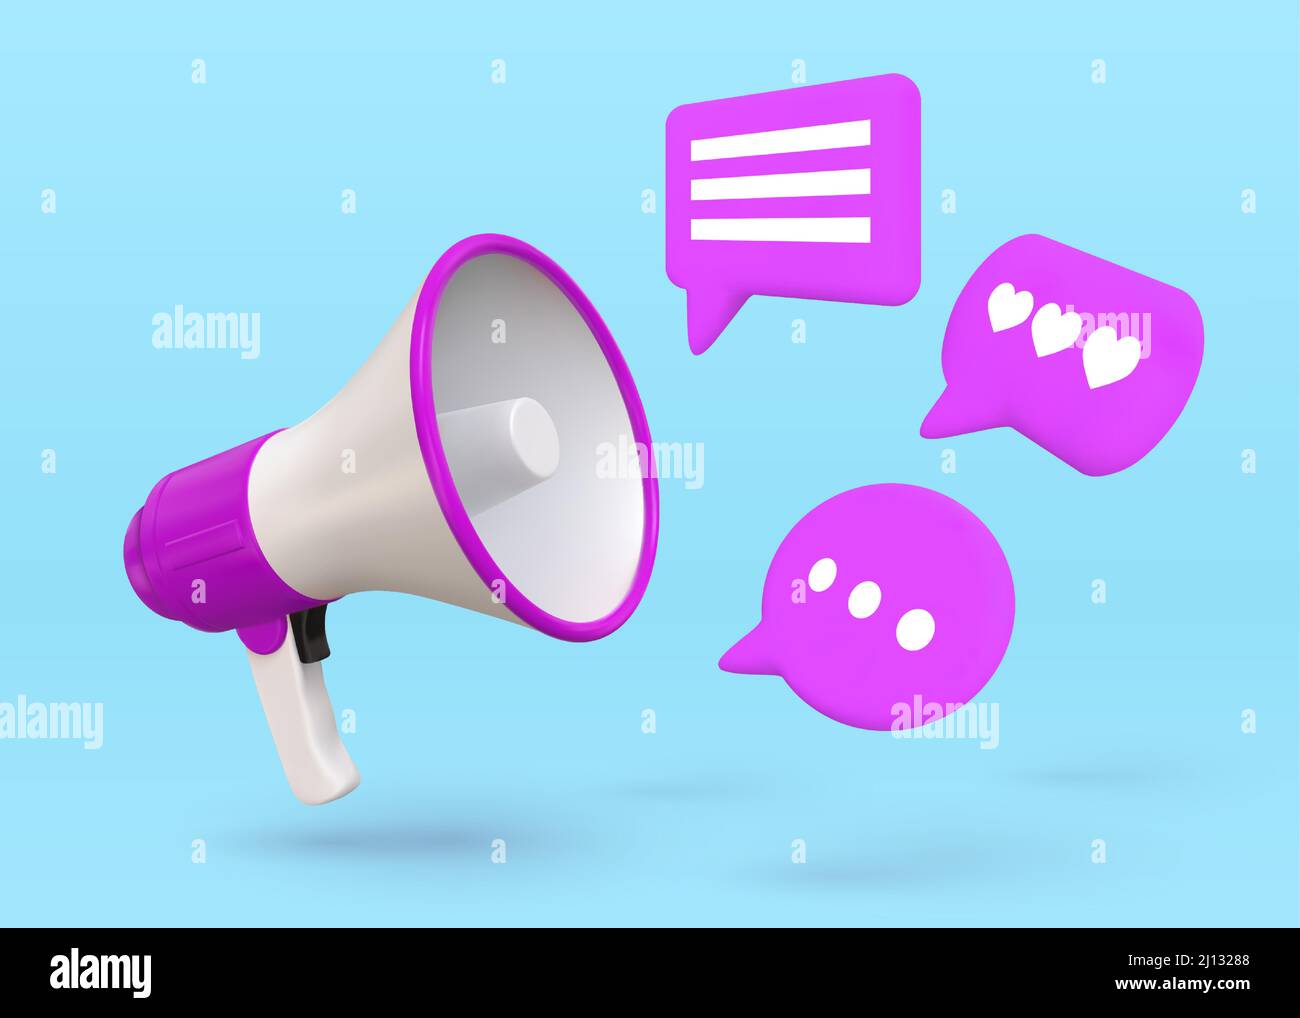 Marketingposter mit 3D Megafon-Lautsprecher und Chat-Blasen. Social Network Werbung, Einstellung ankündigen oder Stellenangebot Vektor-Konzept Stock Vektor